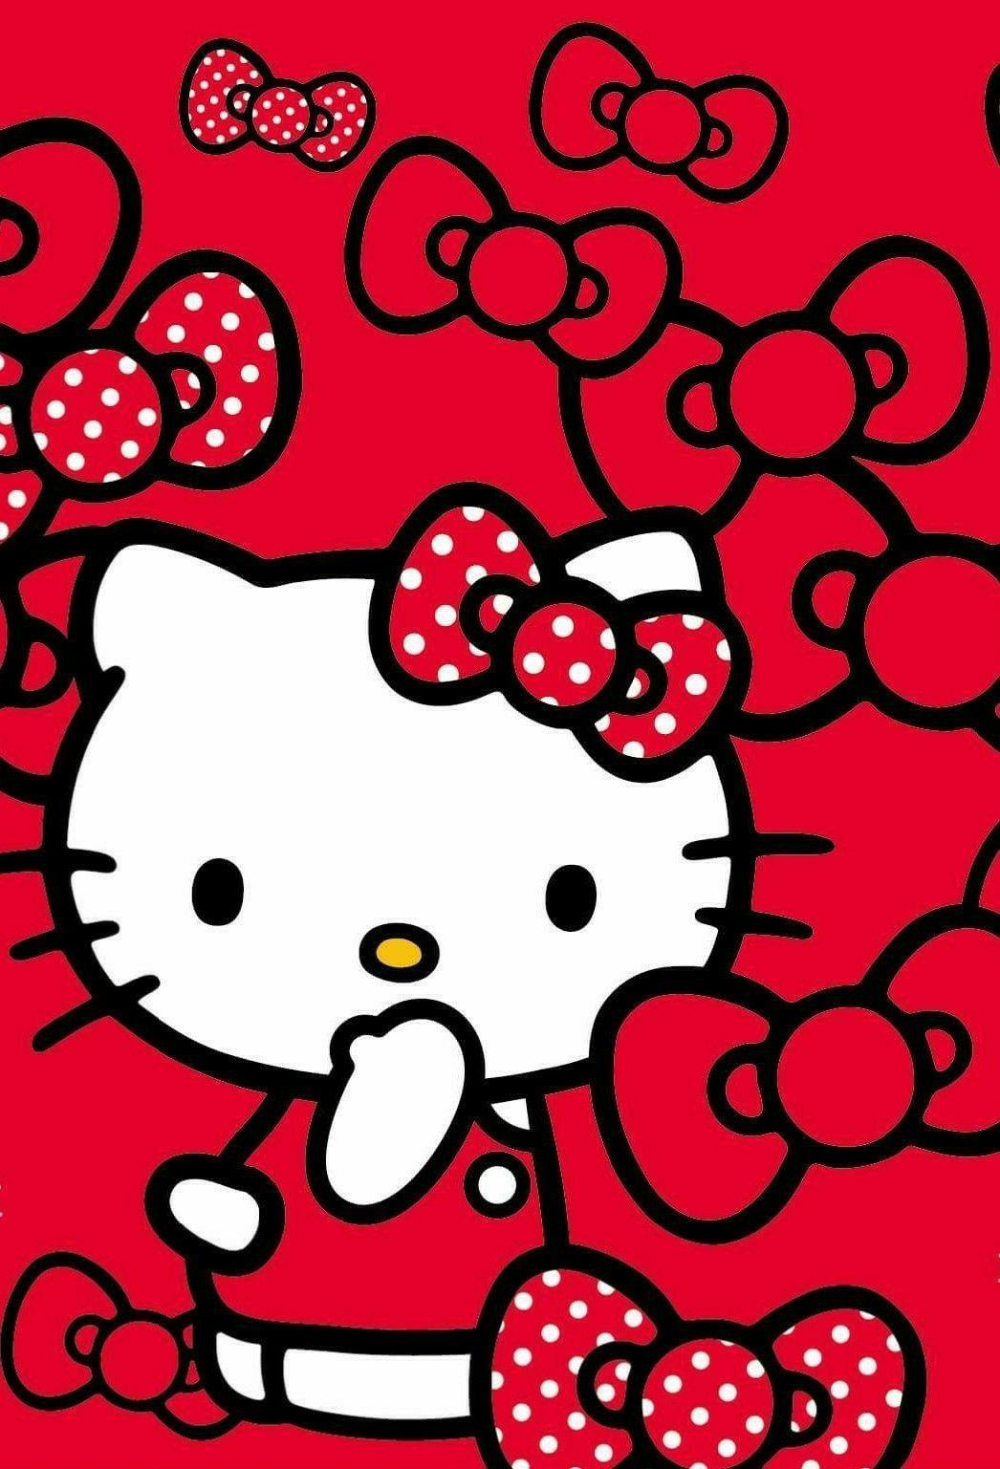 Hình nền Hello Kitty đỏ đượm sắc màu và nét duyên dáng sẽ làm cho điện thoại của bạn thật nổi bật. Bạn sẽ không thể rời mắt khỏi chiếc điện thoại của mình khi sử dụng hình nền này.